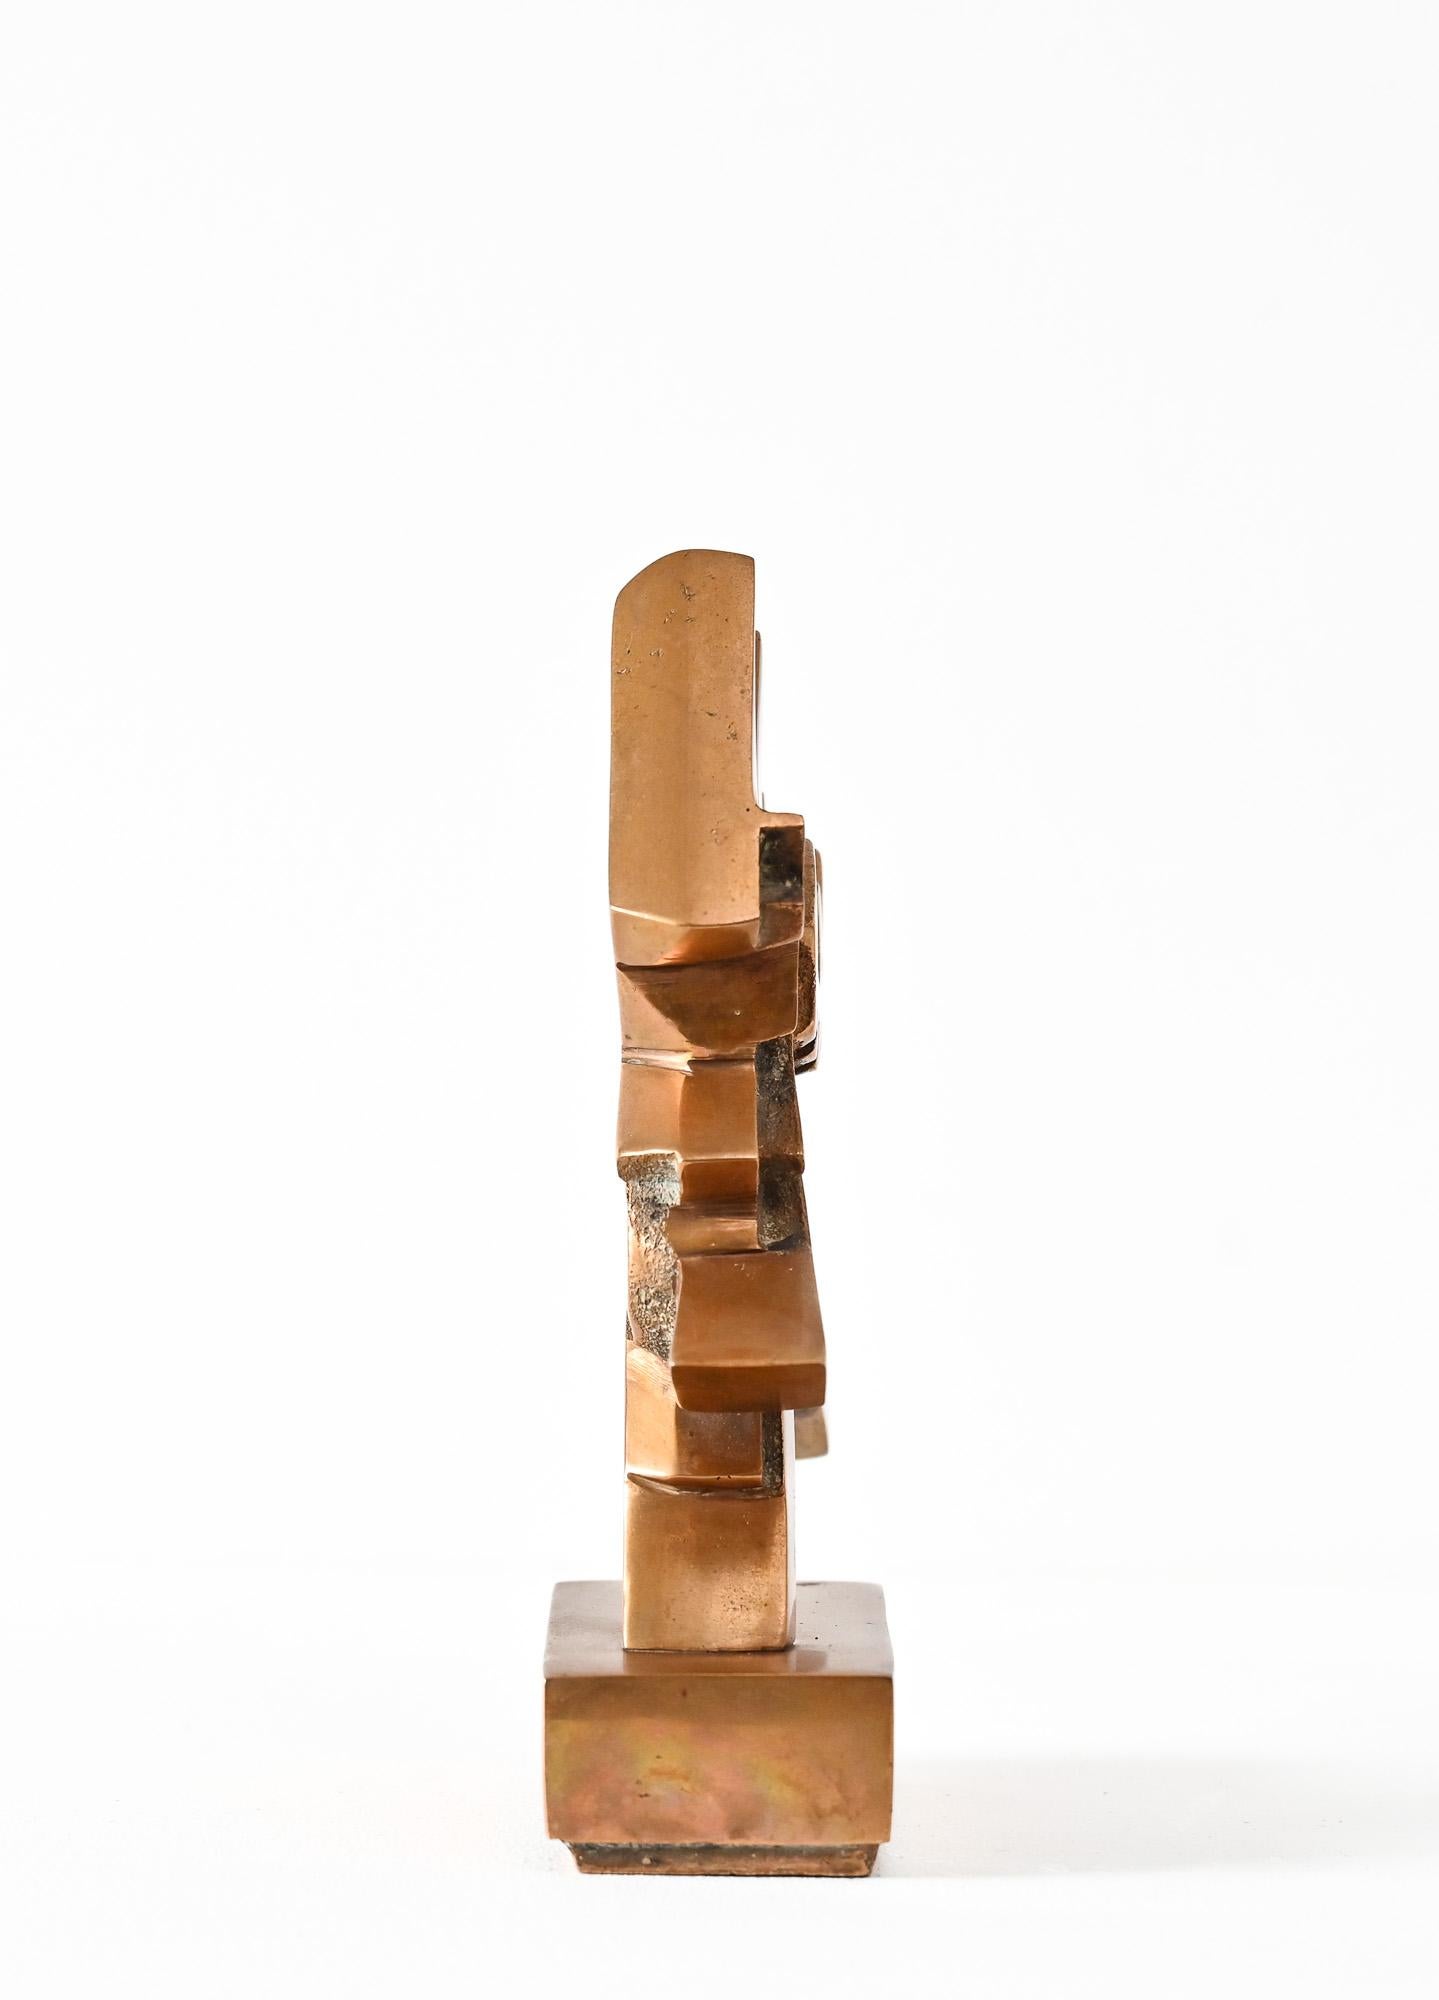 Abstrakte Form A aus Bronzeguss von Umberto Mastroianni

im Stil des italienischen Futurismus
signiert auf der Vorderseite - hergestellt in Italien um 1970

Umberto Mastroianni gilt als einer der wichtigsten italienischen abstrakten Bildhauer des